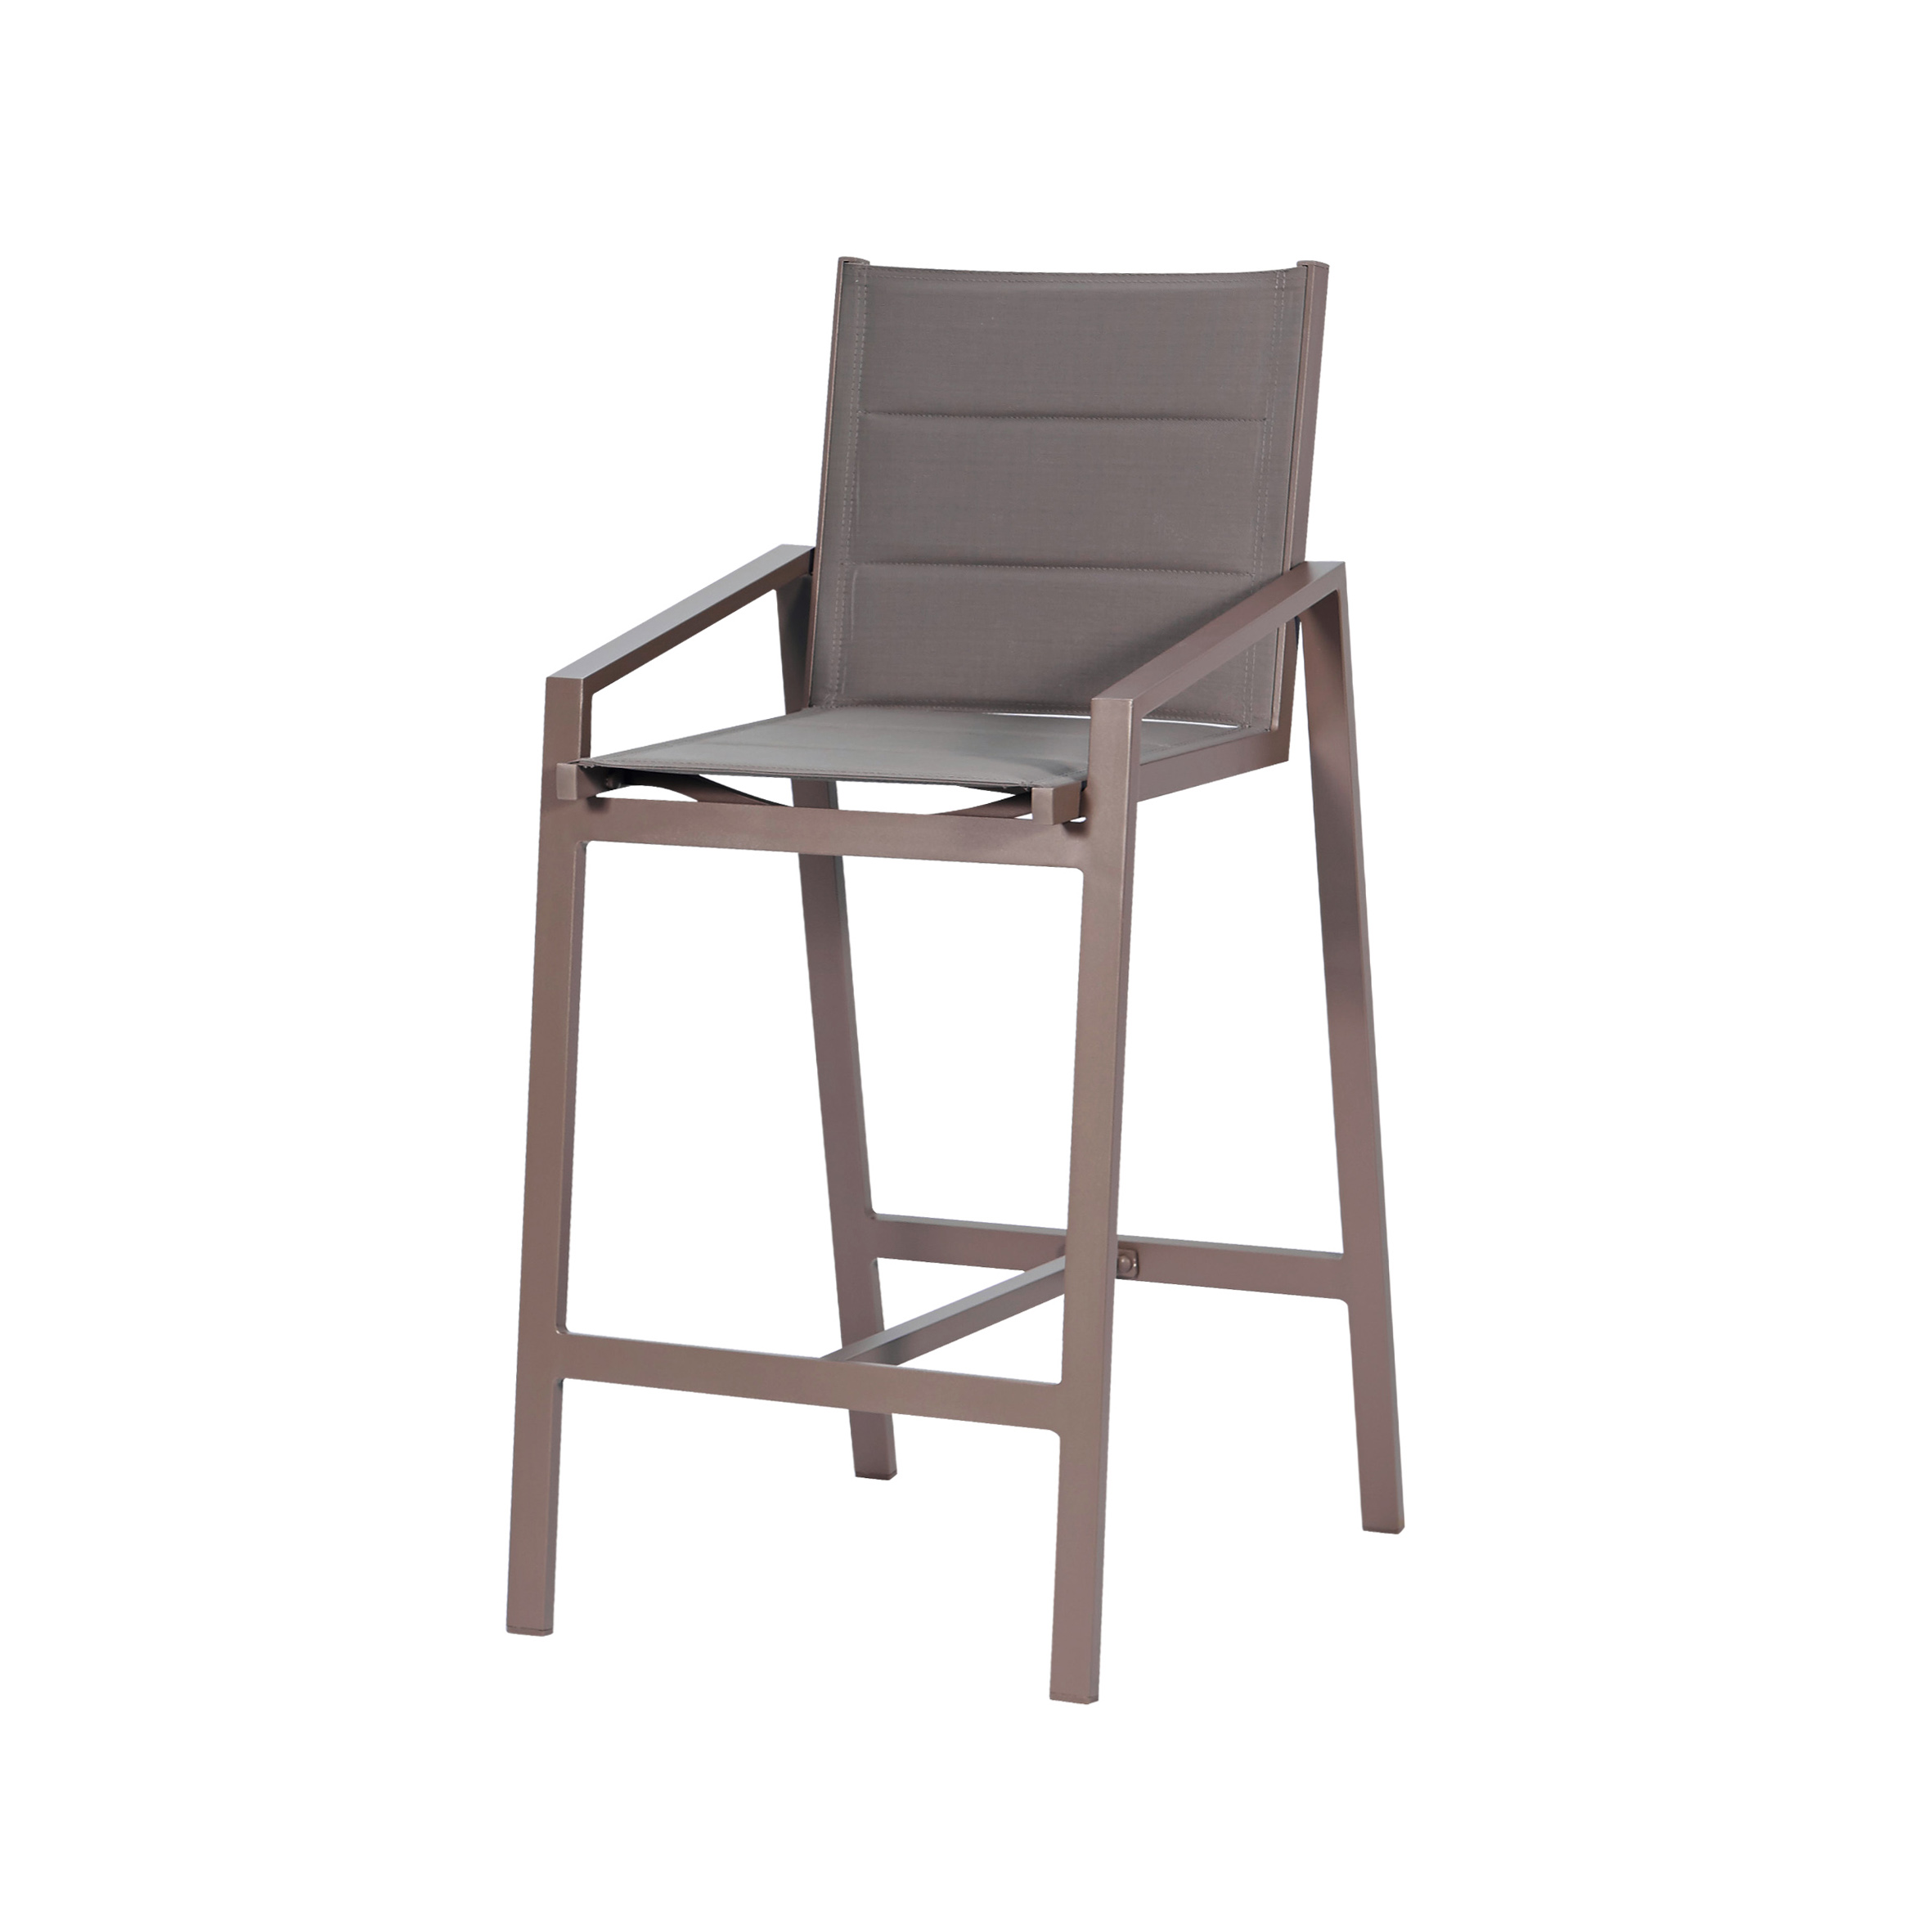 Белоснежный текстильный барный стул S1